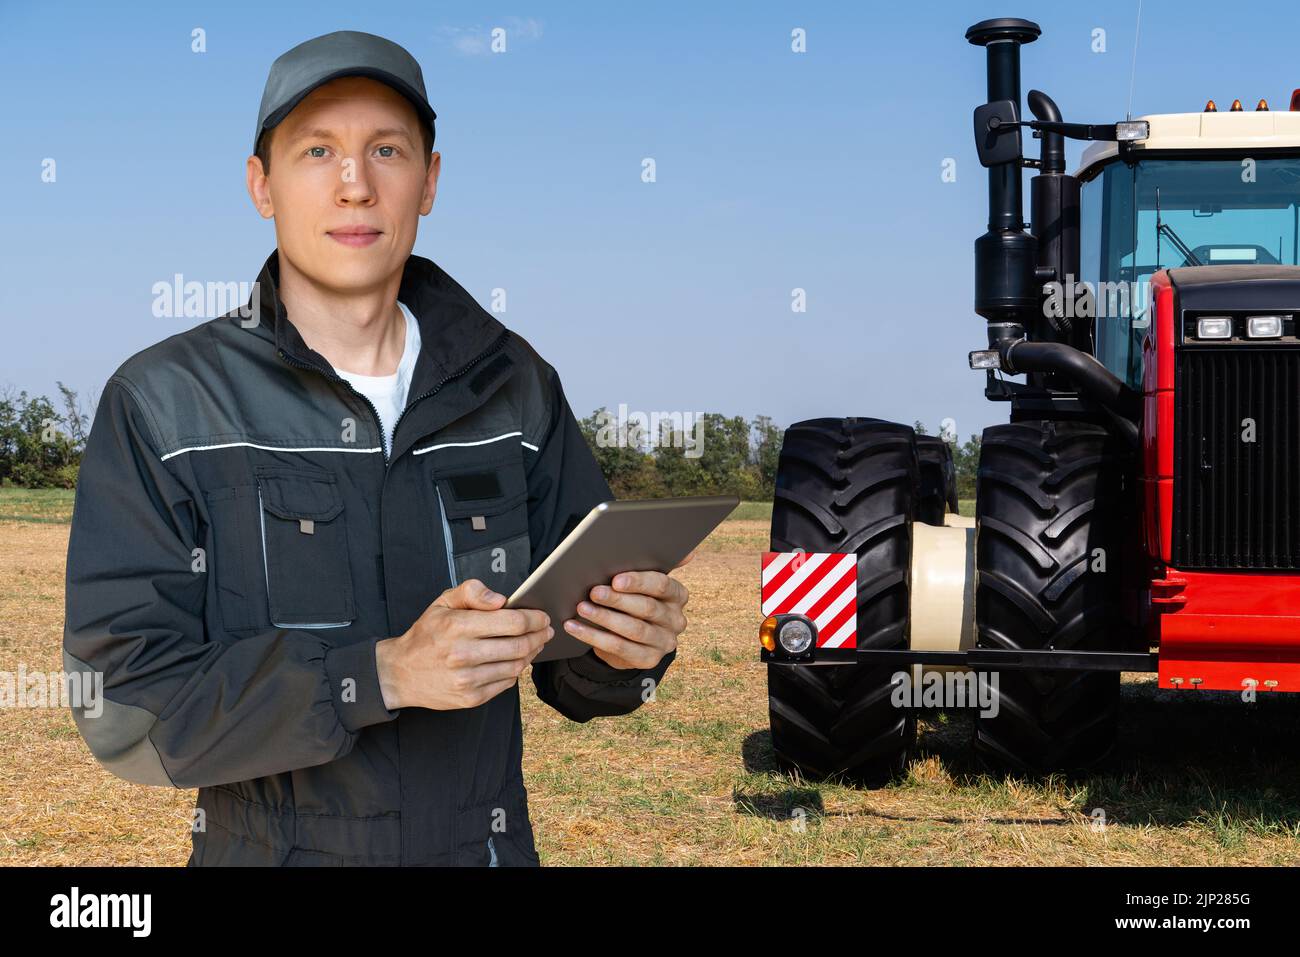 Agriculteur équipé d'une tablette numérique à l'arrière-plan d'un tracteur agricole Banque D'Images